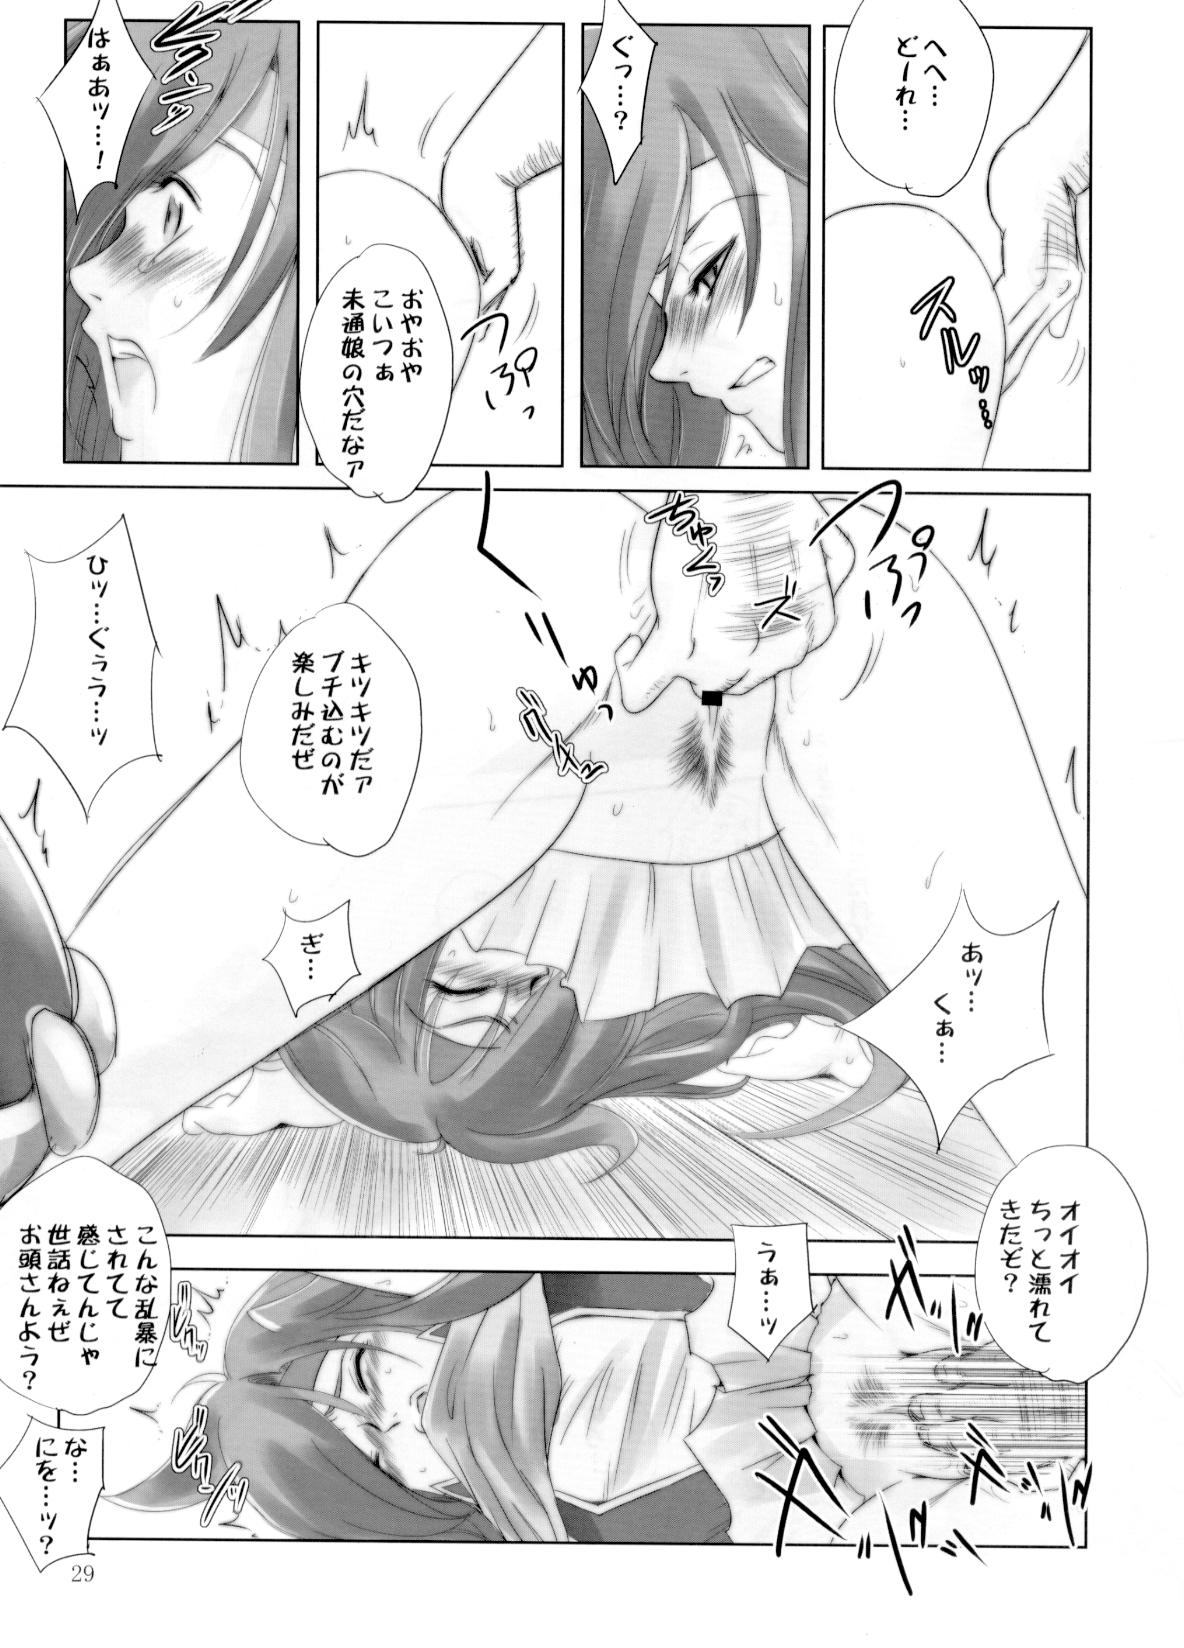 [Ikebukuro DPC] White Impure Desire vol.11 (Final Fantasy) page 28 full